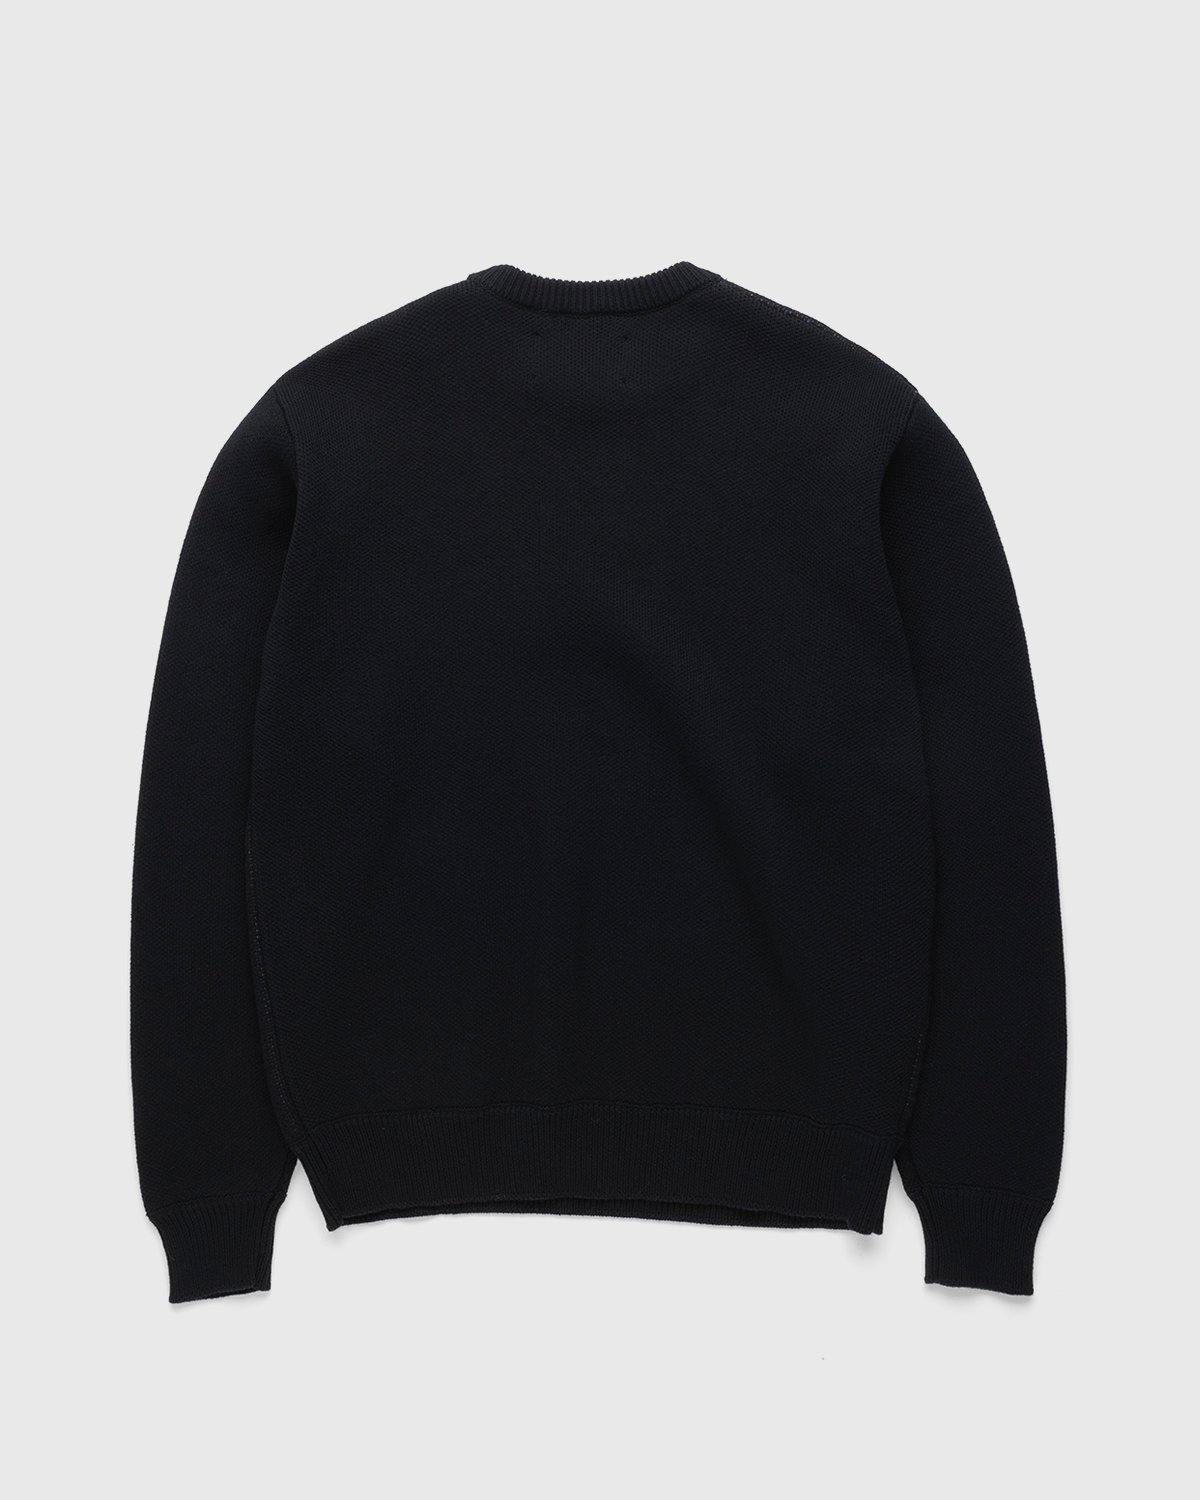 Jacob & Co. x Highsnobiety - Logo Knit Sweater Black - Clothing - Black - Image 2